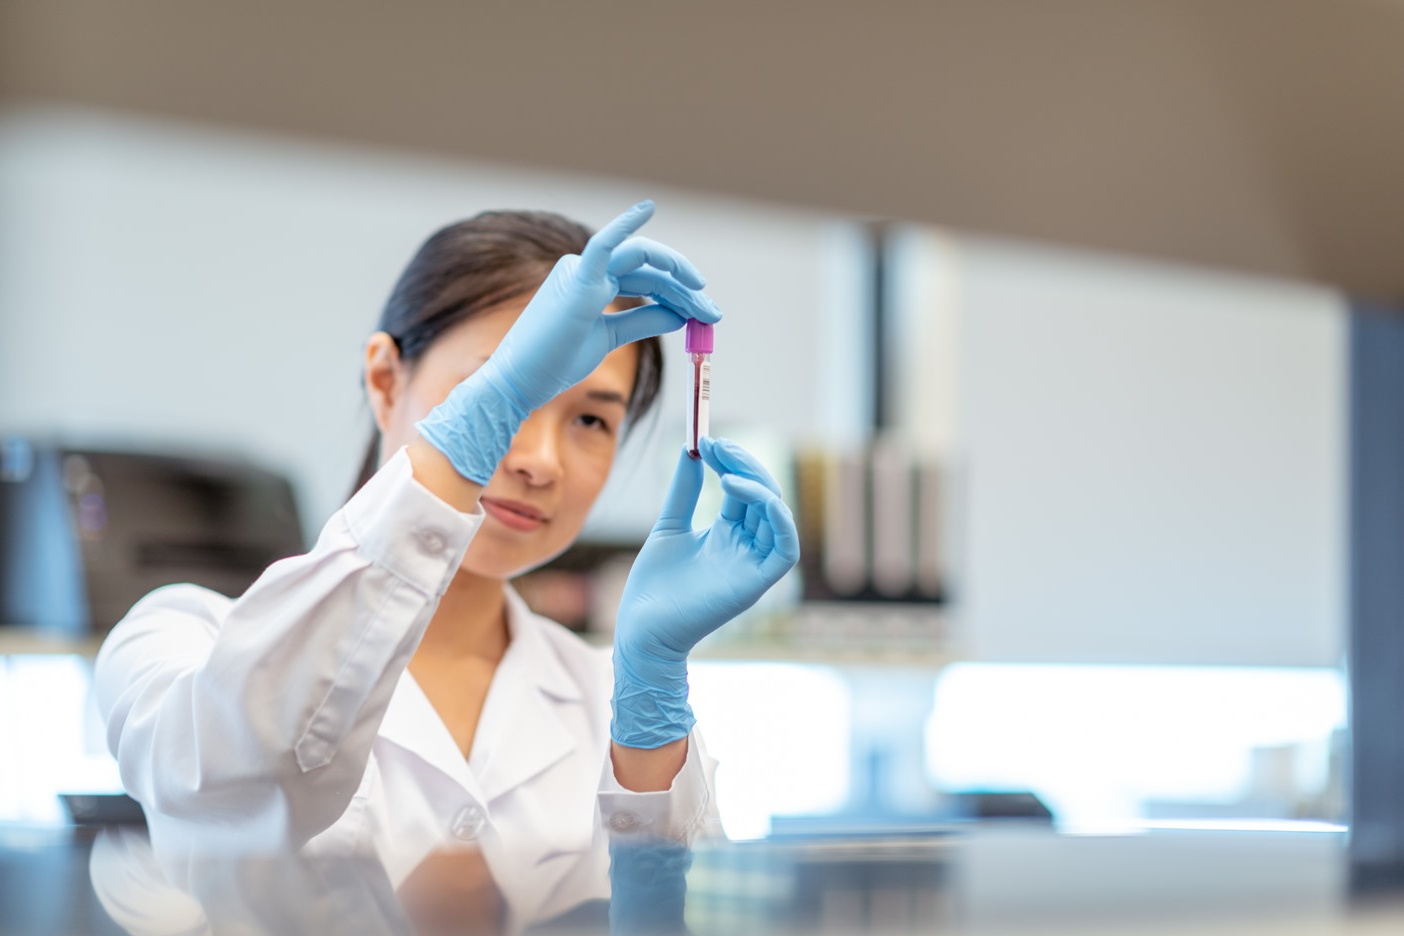 Une chimiste travaillant seule dans un laboratoire. La femme tient un petit flacon de sang et analyse l’échantillon médical. Elle porte une blouse de laboratoire et des gants de protection.